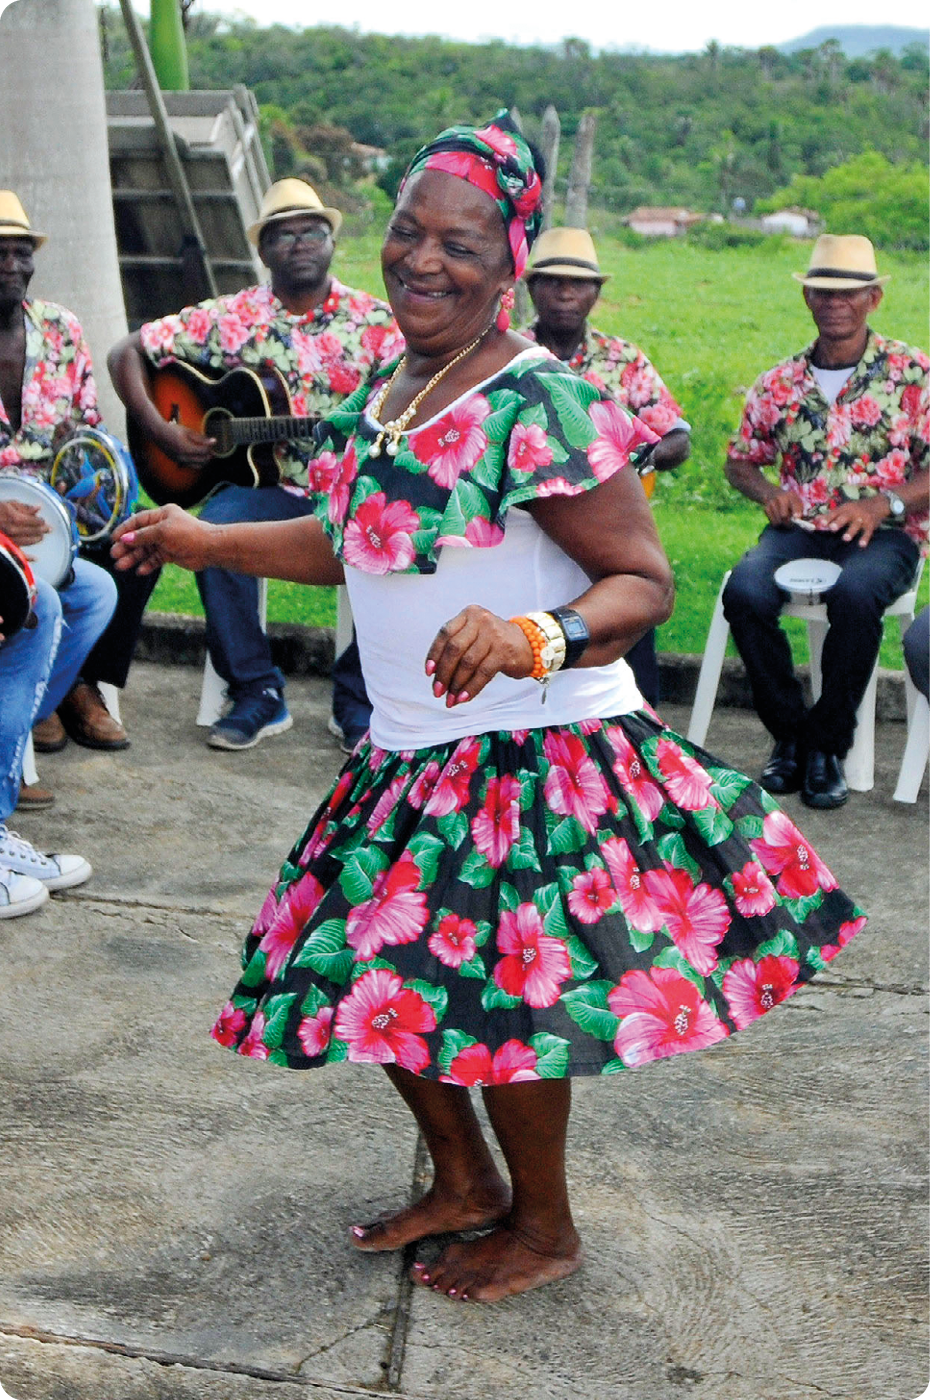 Fotografia. Uma mulher negra, usando lenço florido na cabeça, vestido rodado com babado. Ela está descalça e dançando. Atrás, homens negros usando chapéu, camisa florida e calça. Eles estão sentados, segurando com as mãos instrumentos musicais.